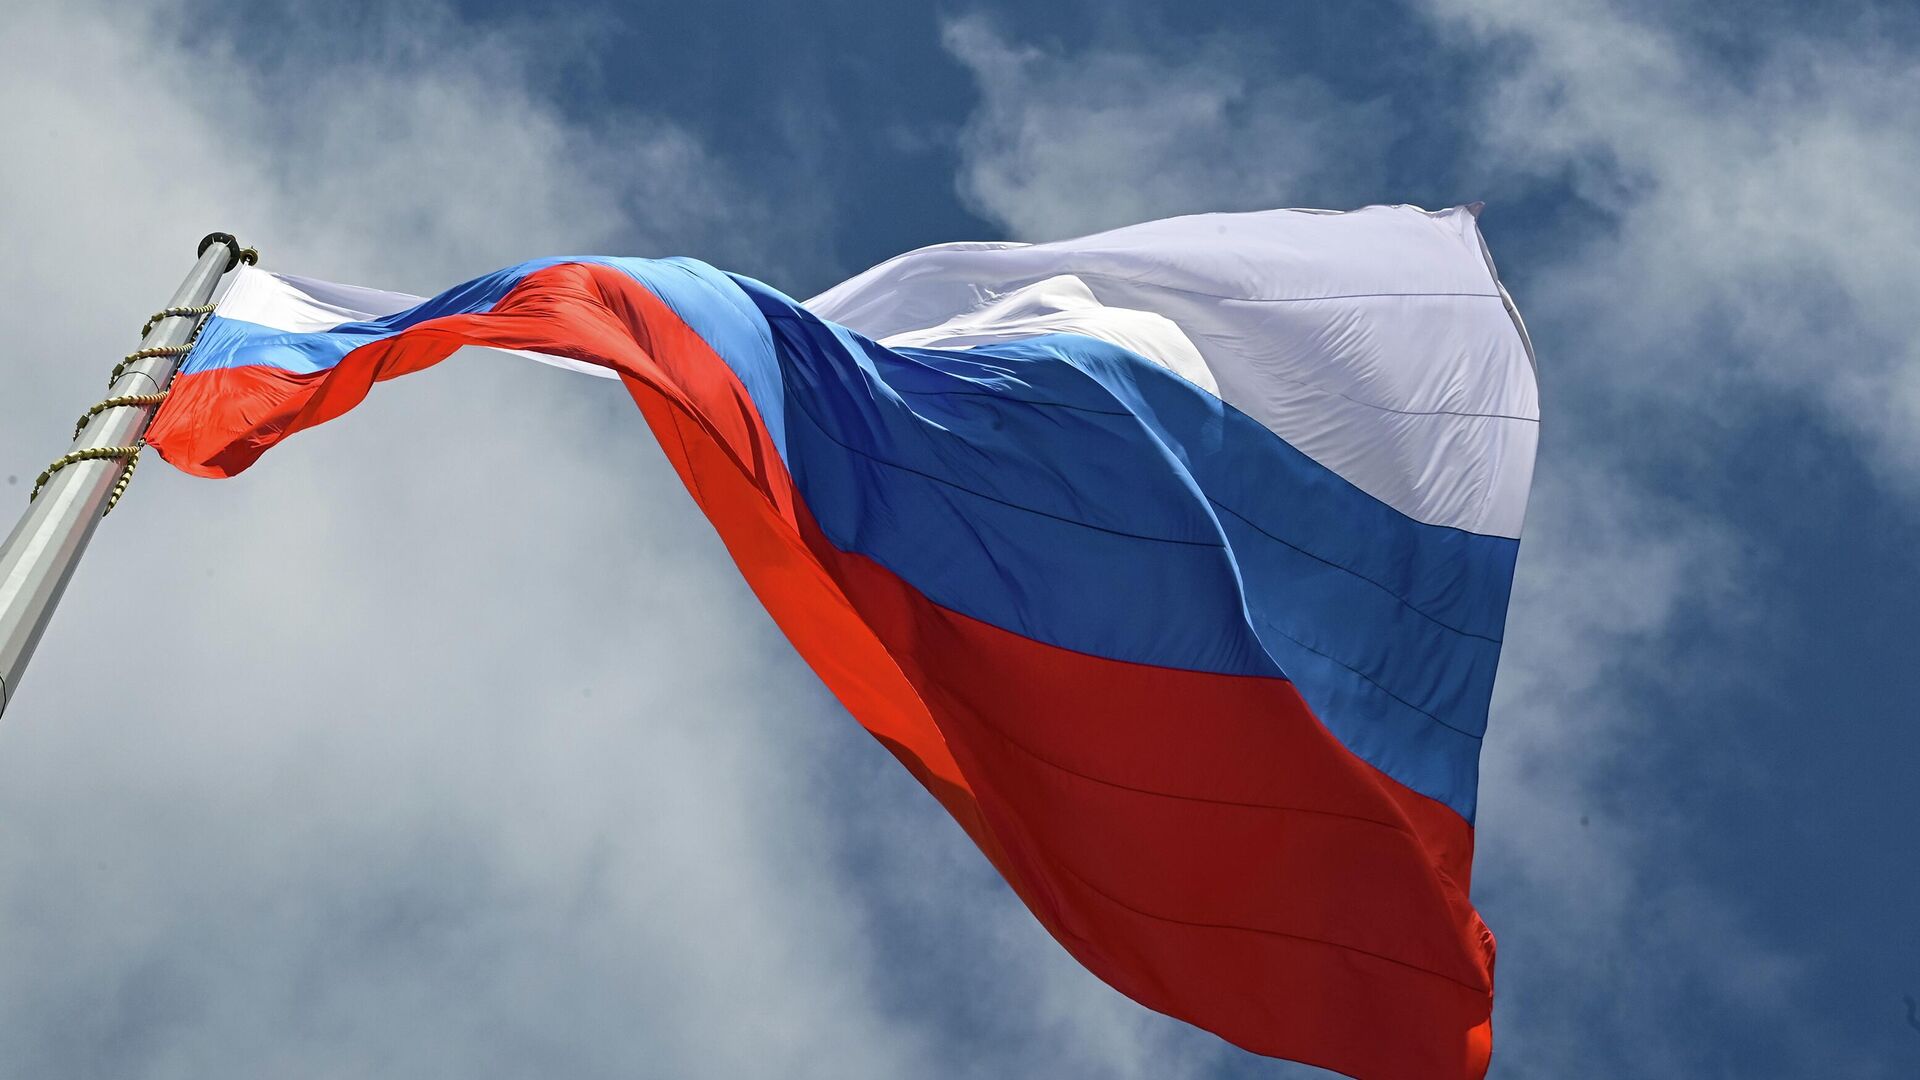 Неизвестные установили флаг России на бывшем здании парламента в Германии